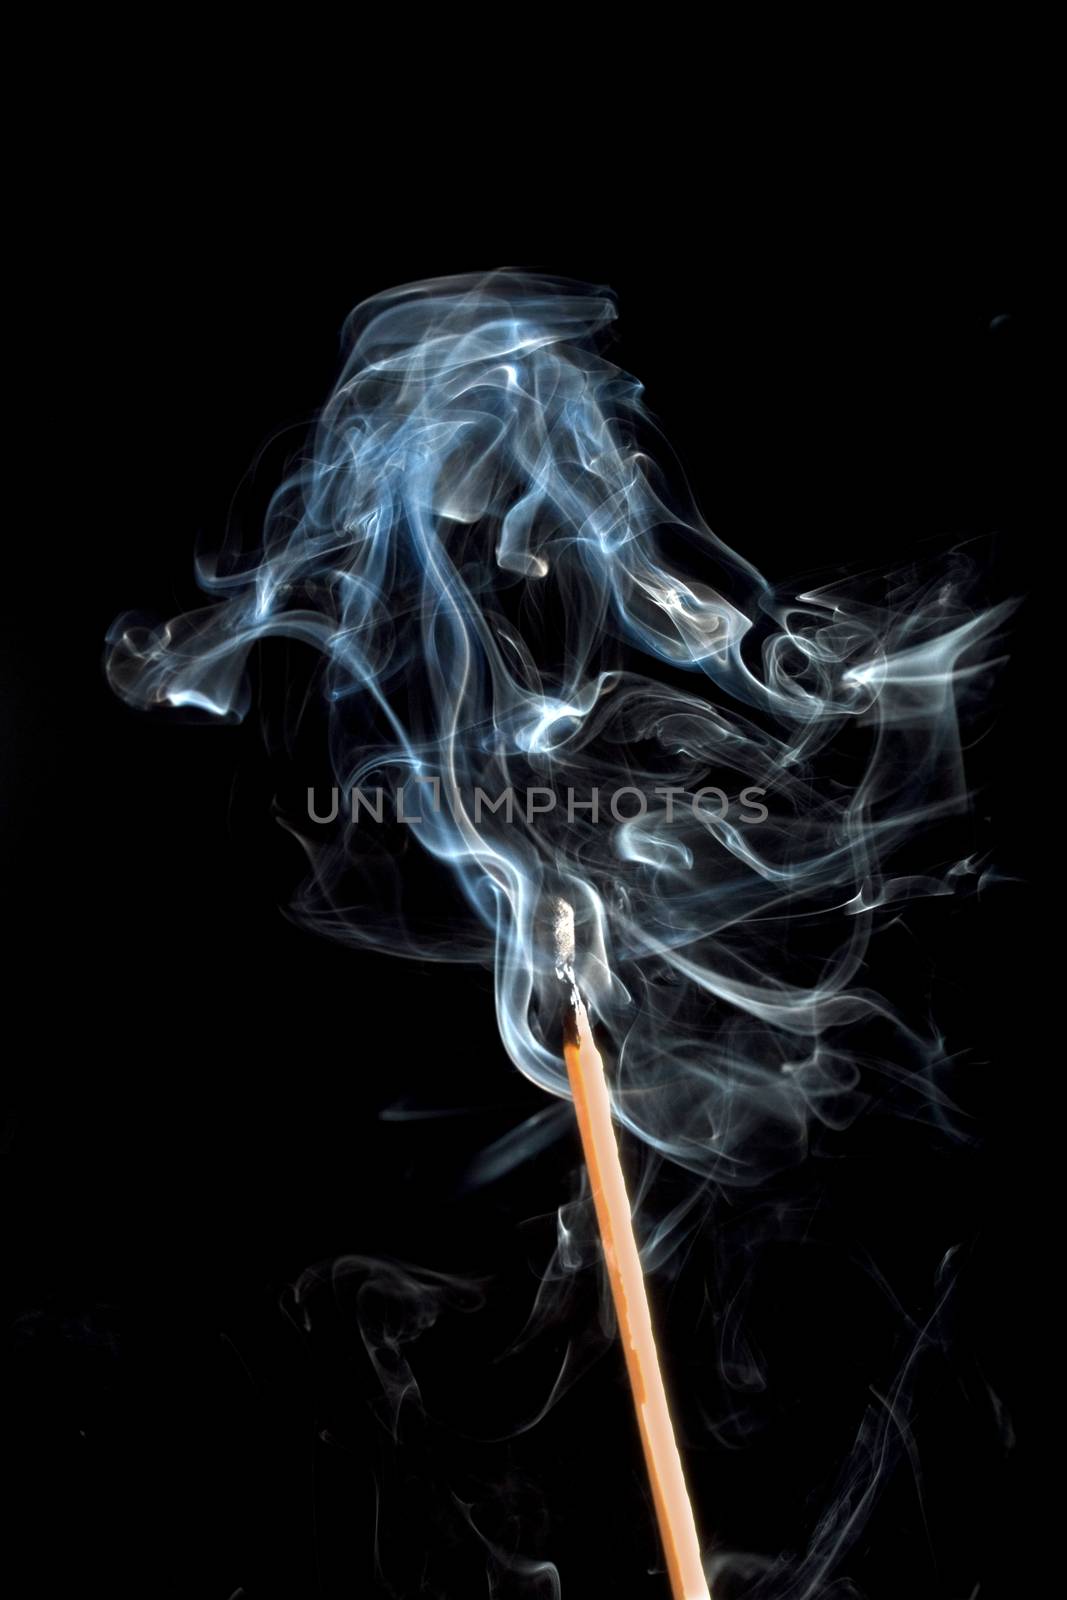 Burning match with smoke by Irina1977